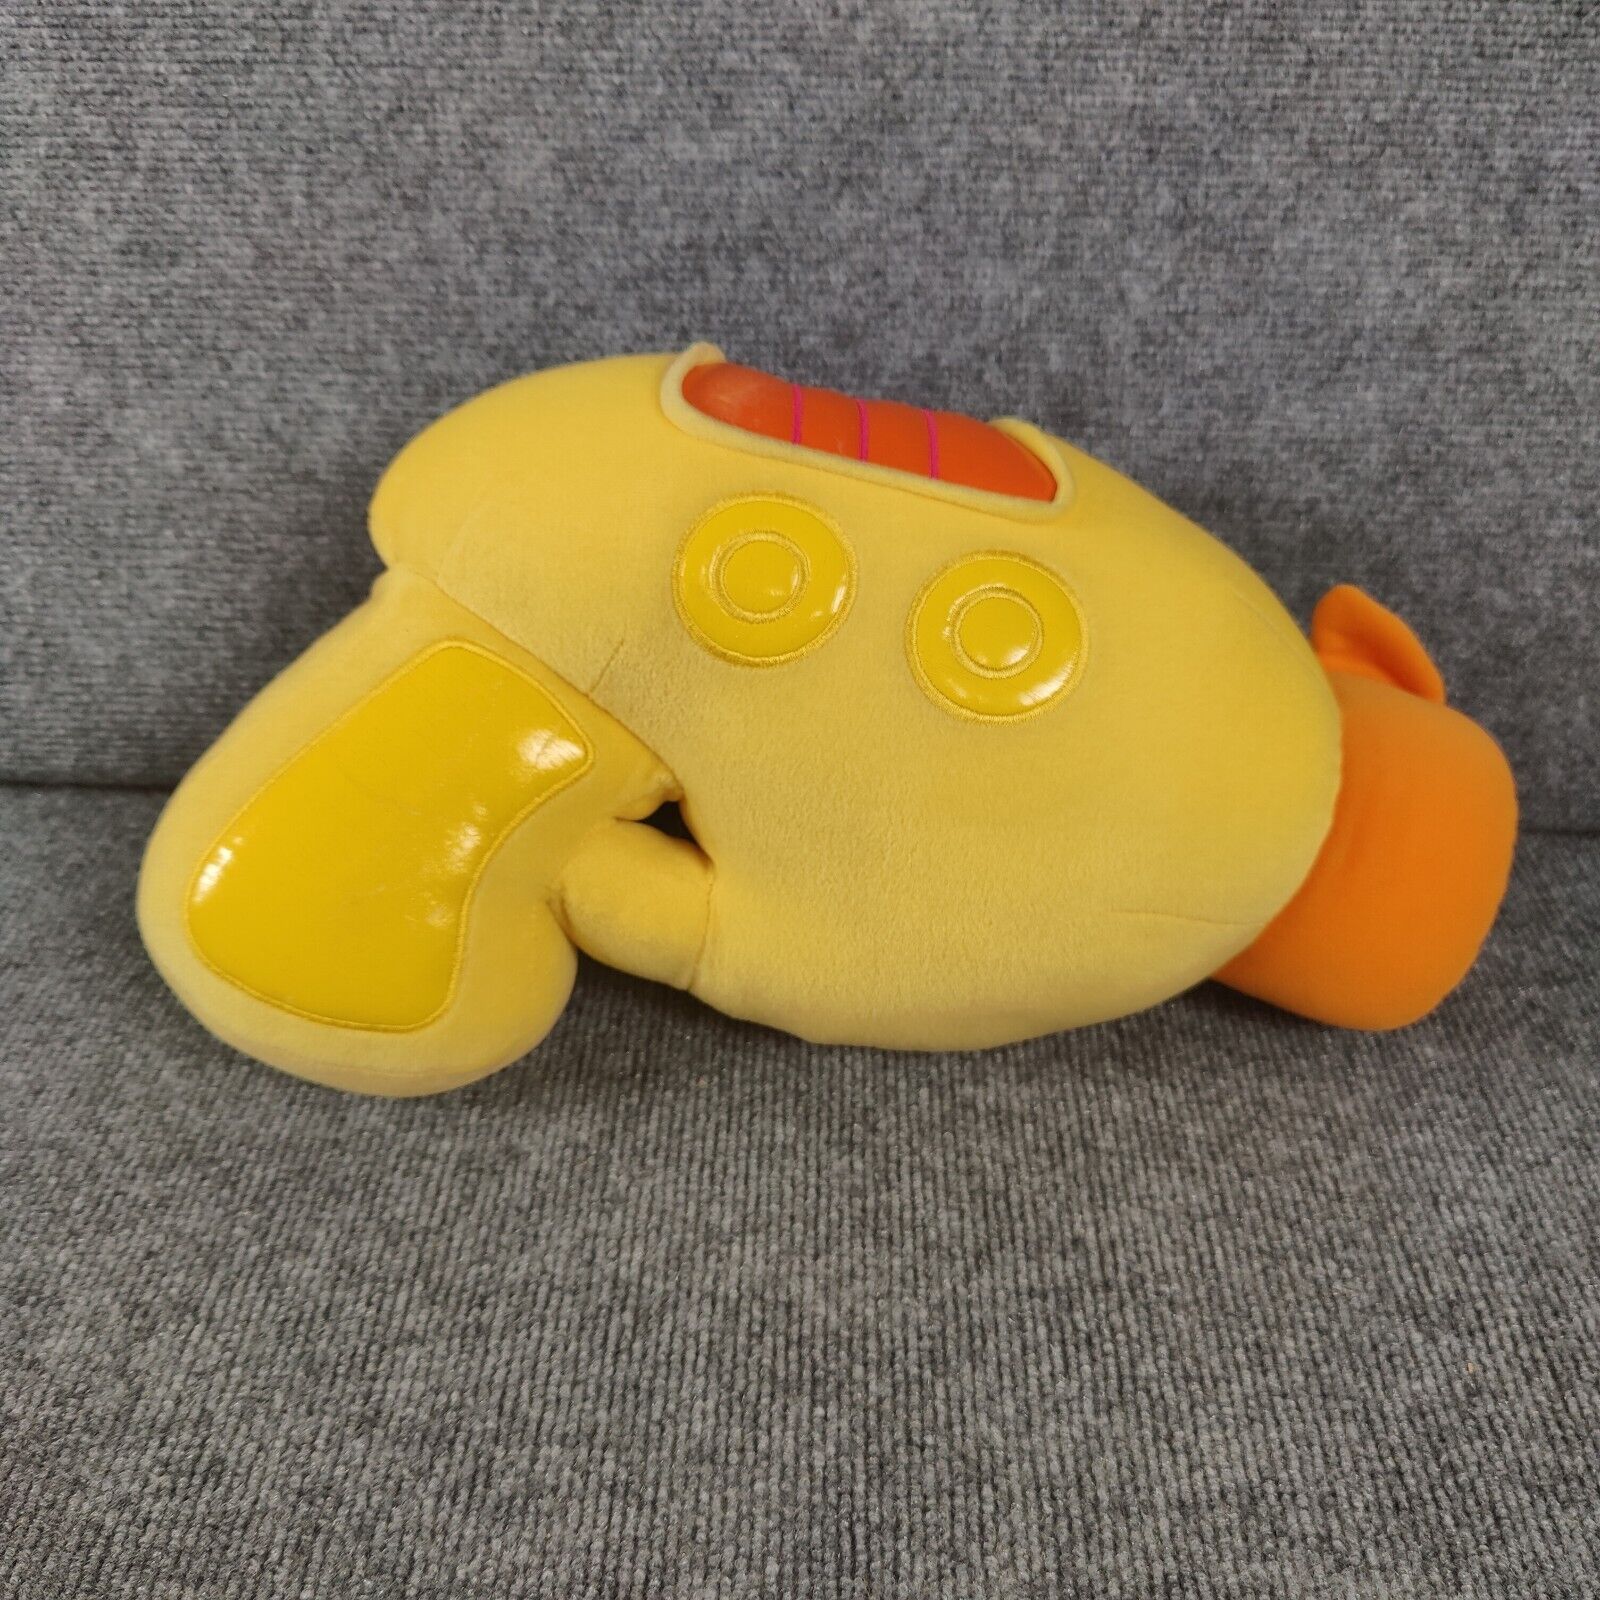 Disney Store Lilo and Stitch Plush Ray Play Gun Laser Yellow Stuffed Toy Rare